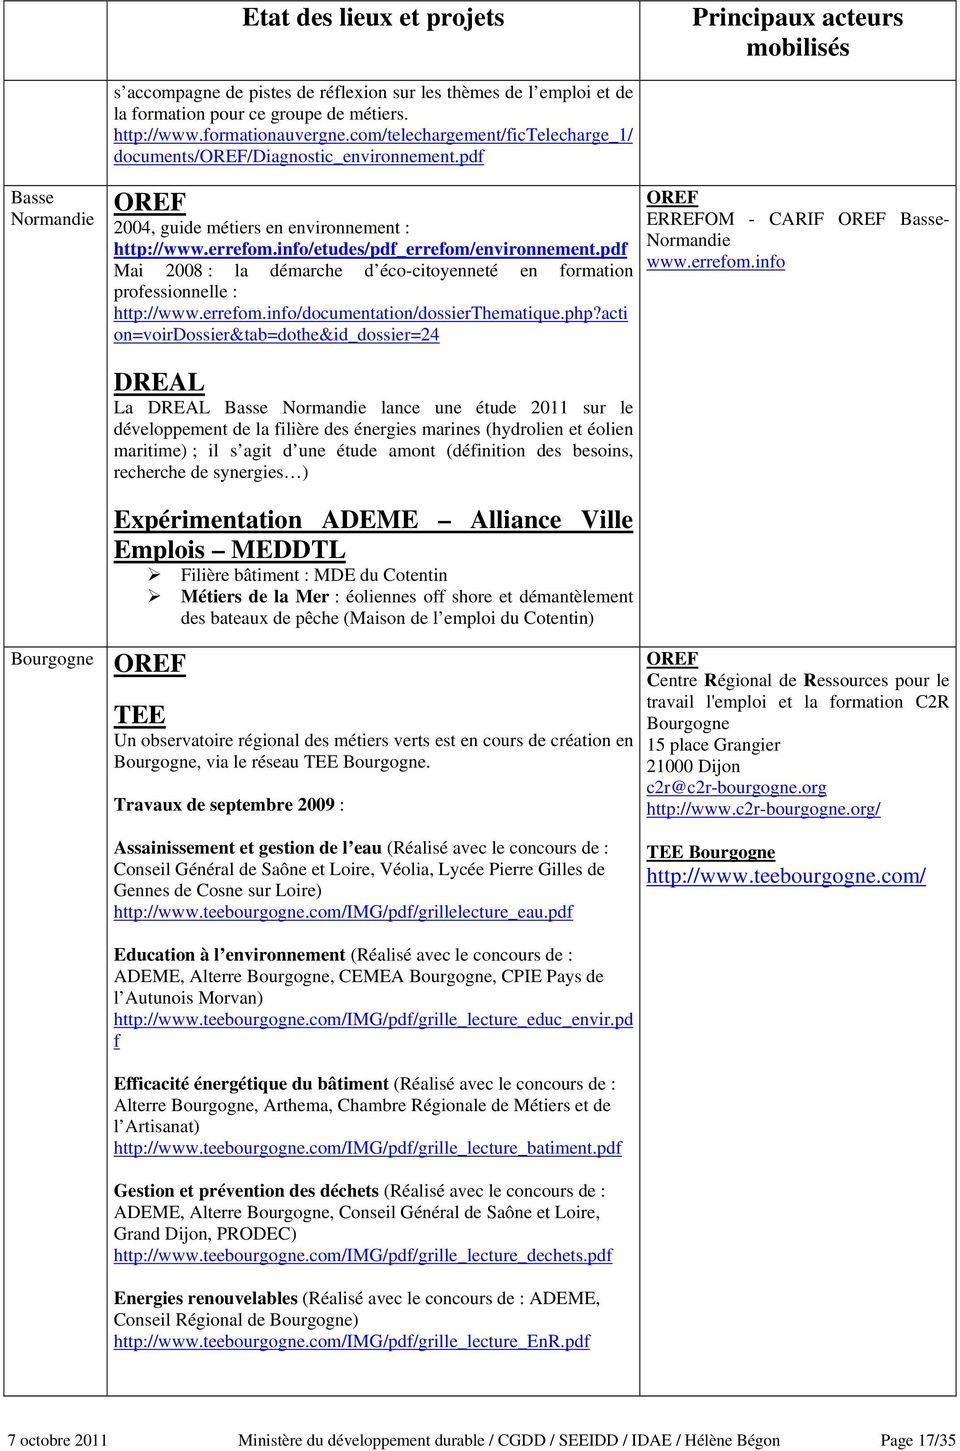 pdf Mai 2008 : la démarche d éco-citoyenneté en formation professionnelle : http://www.errefom.info/documentation/dossierthematique.php?